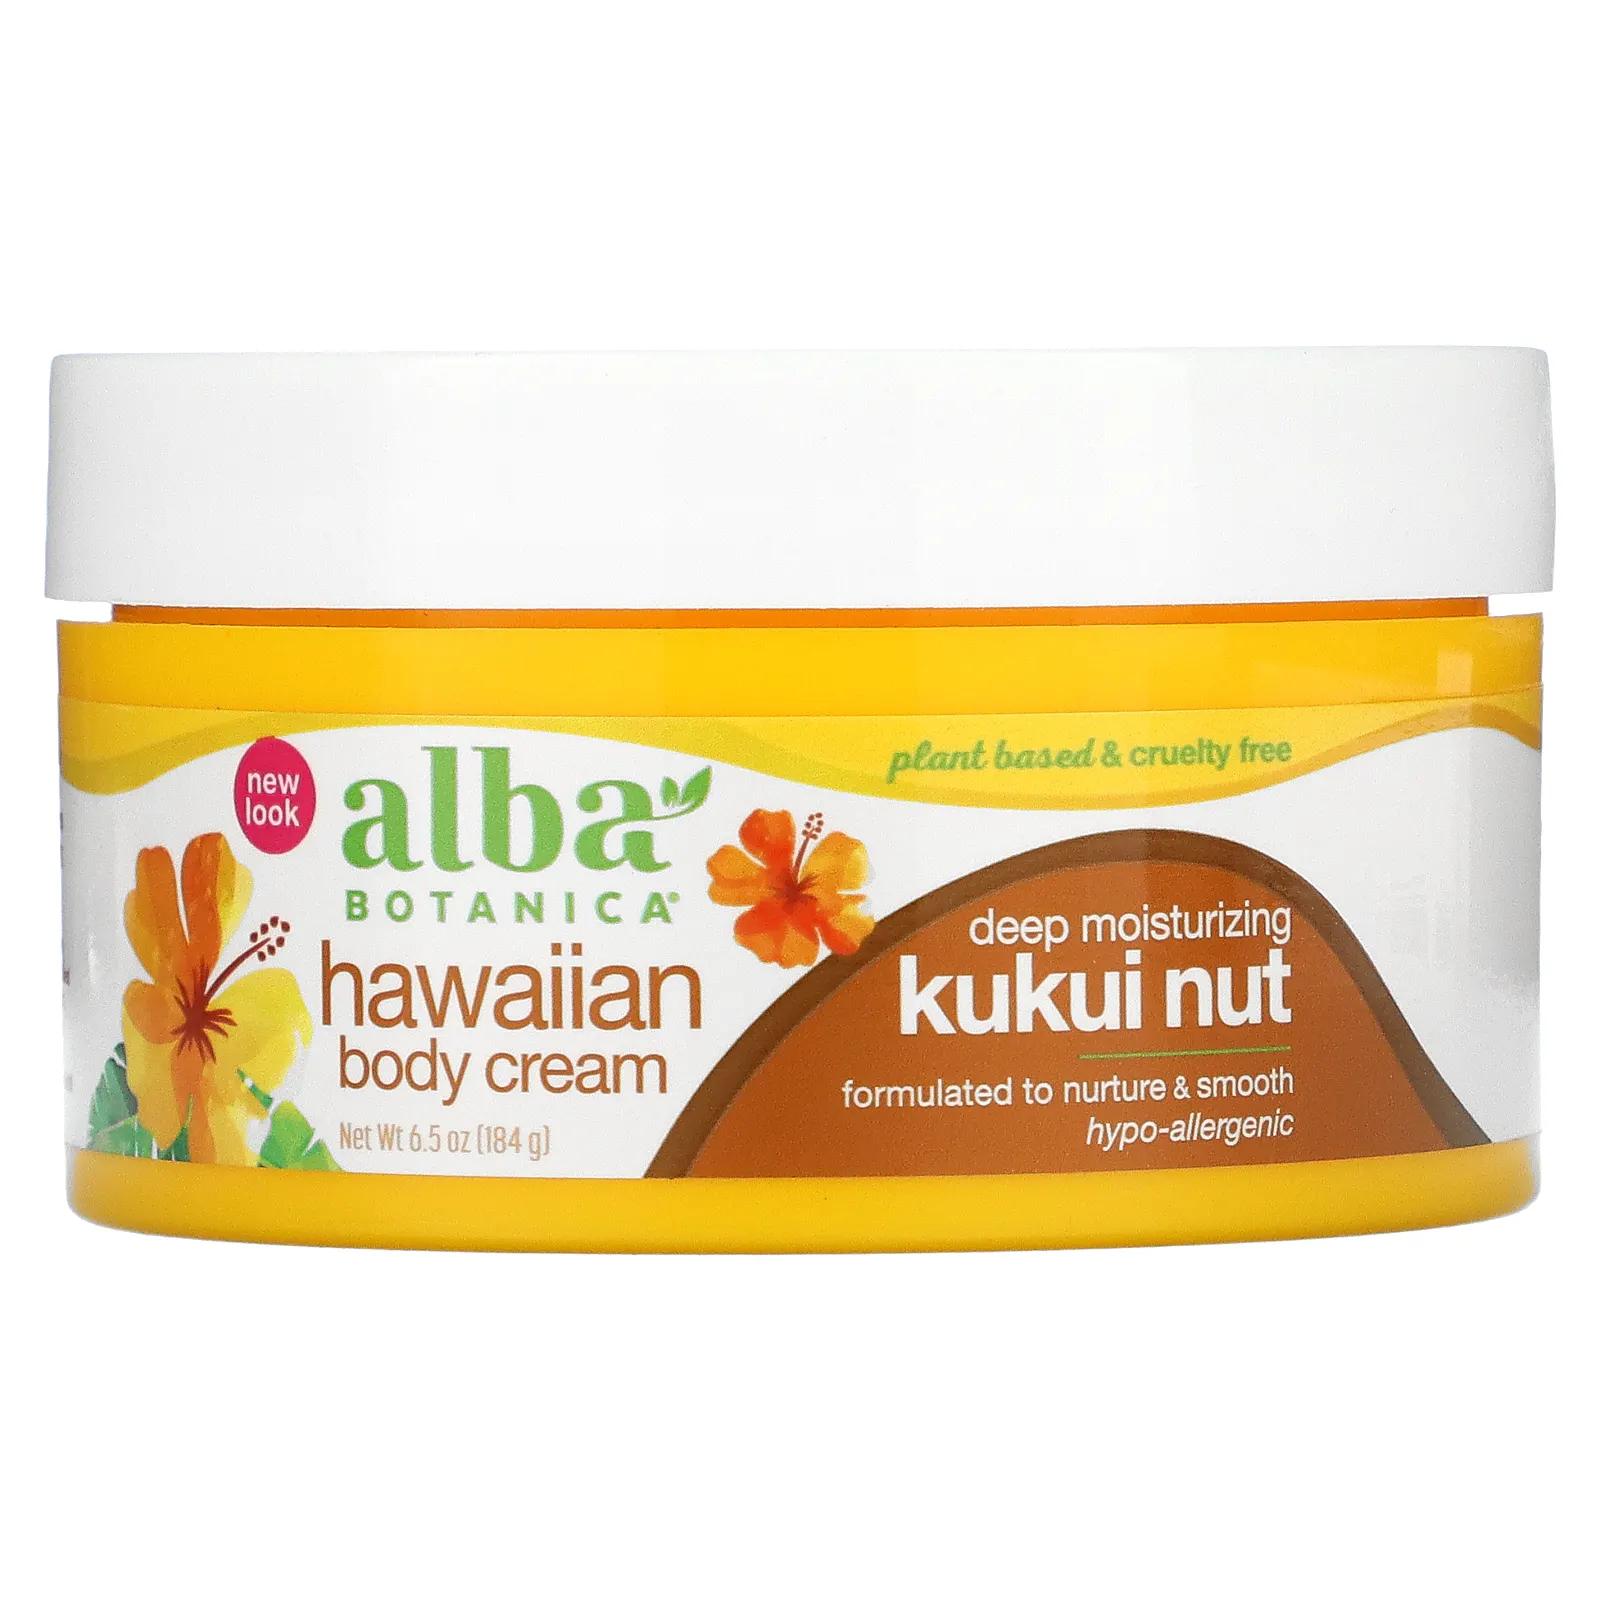 Alba Botanica Гавайский крем для тела орех кукуи 184 г (6,5 унции) alba botanica sunless tanner 4 oz 113 g